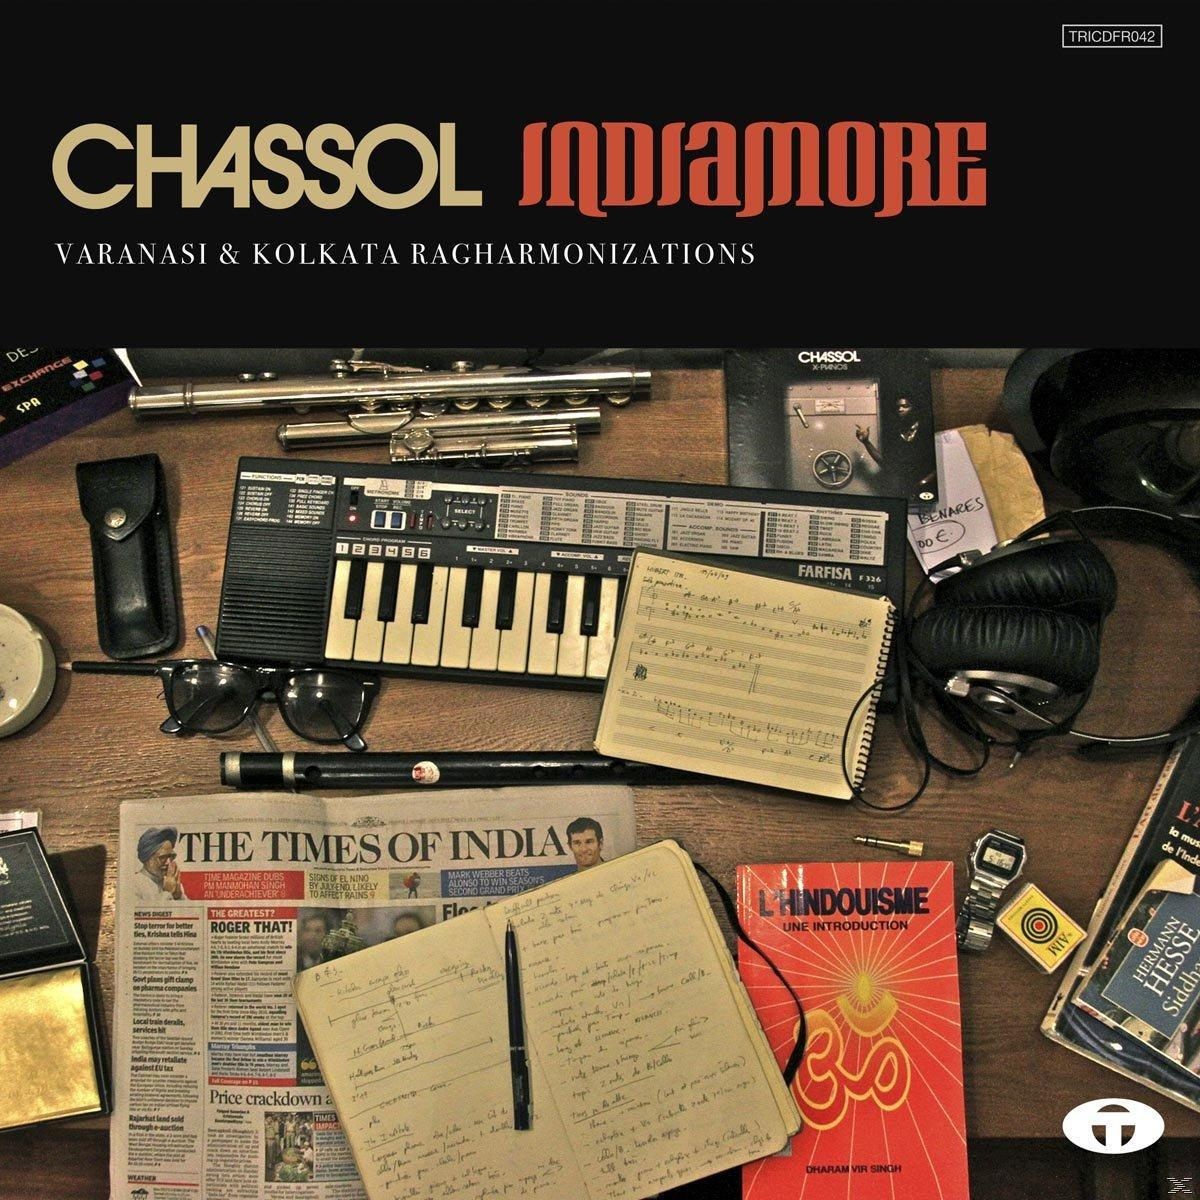 (Vinyl) Indiamore Chassol - -